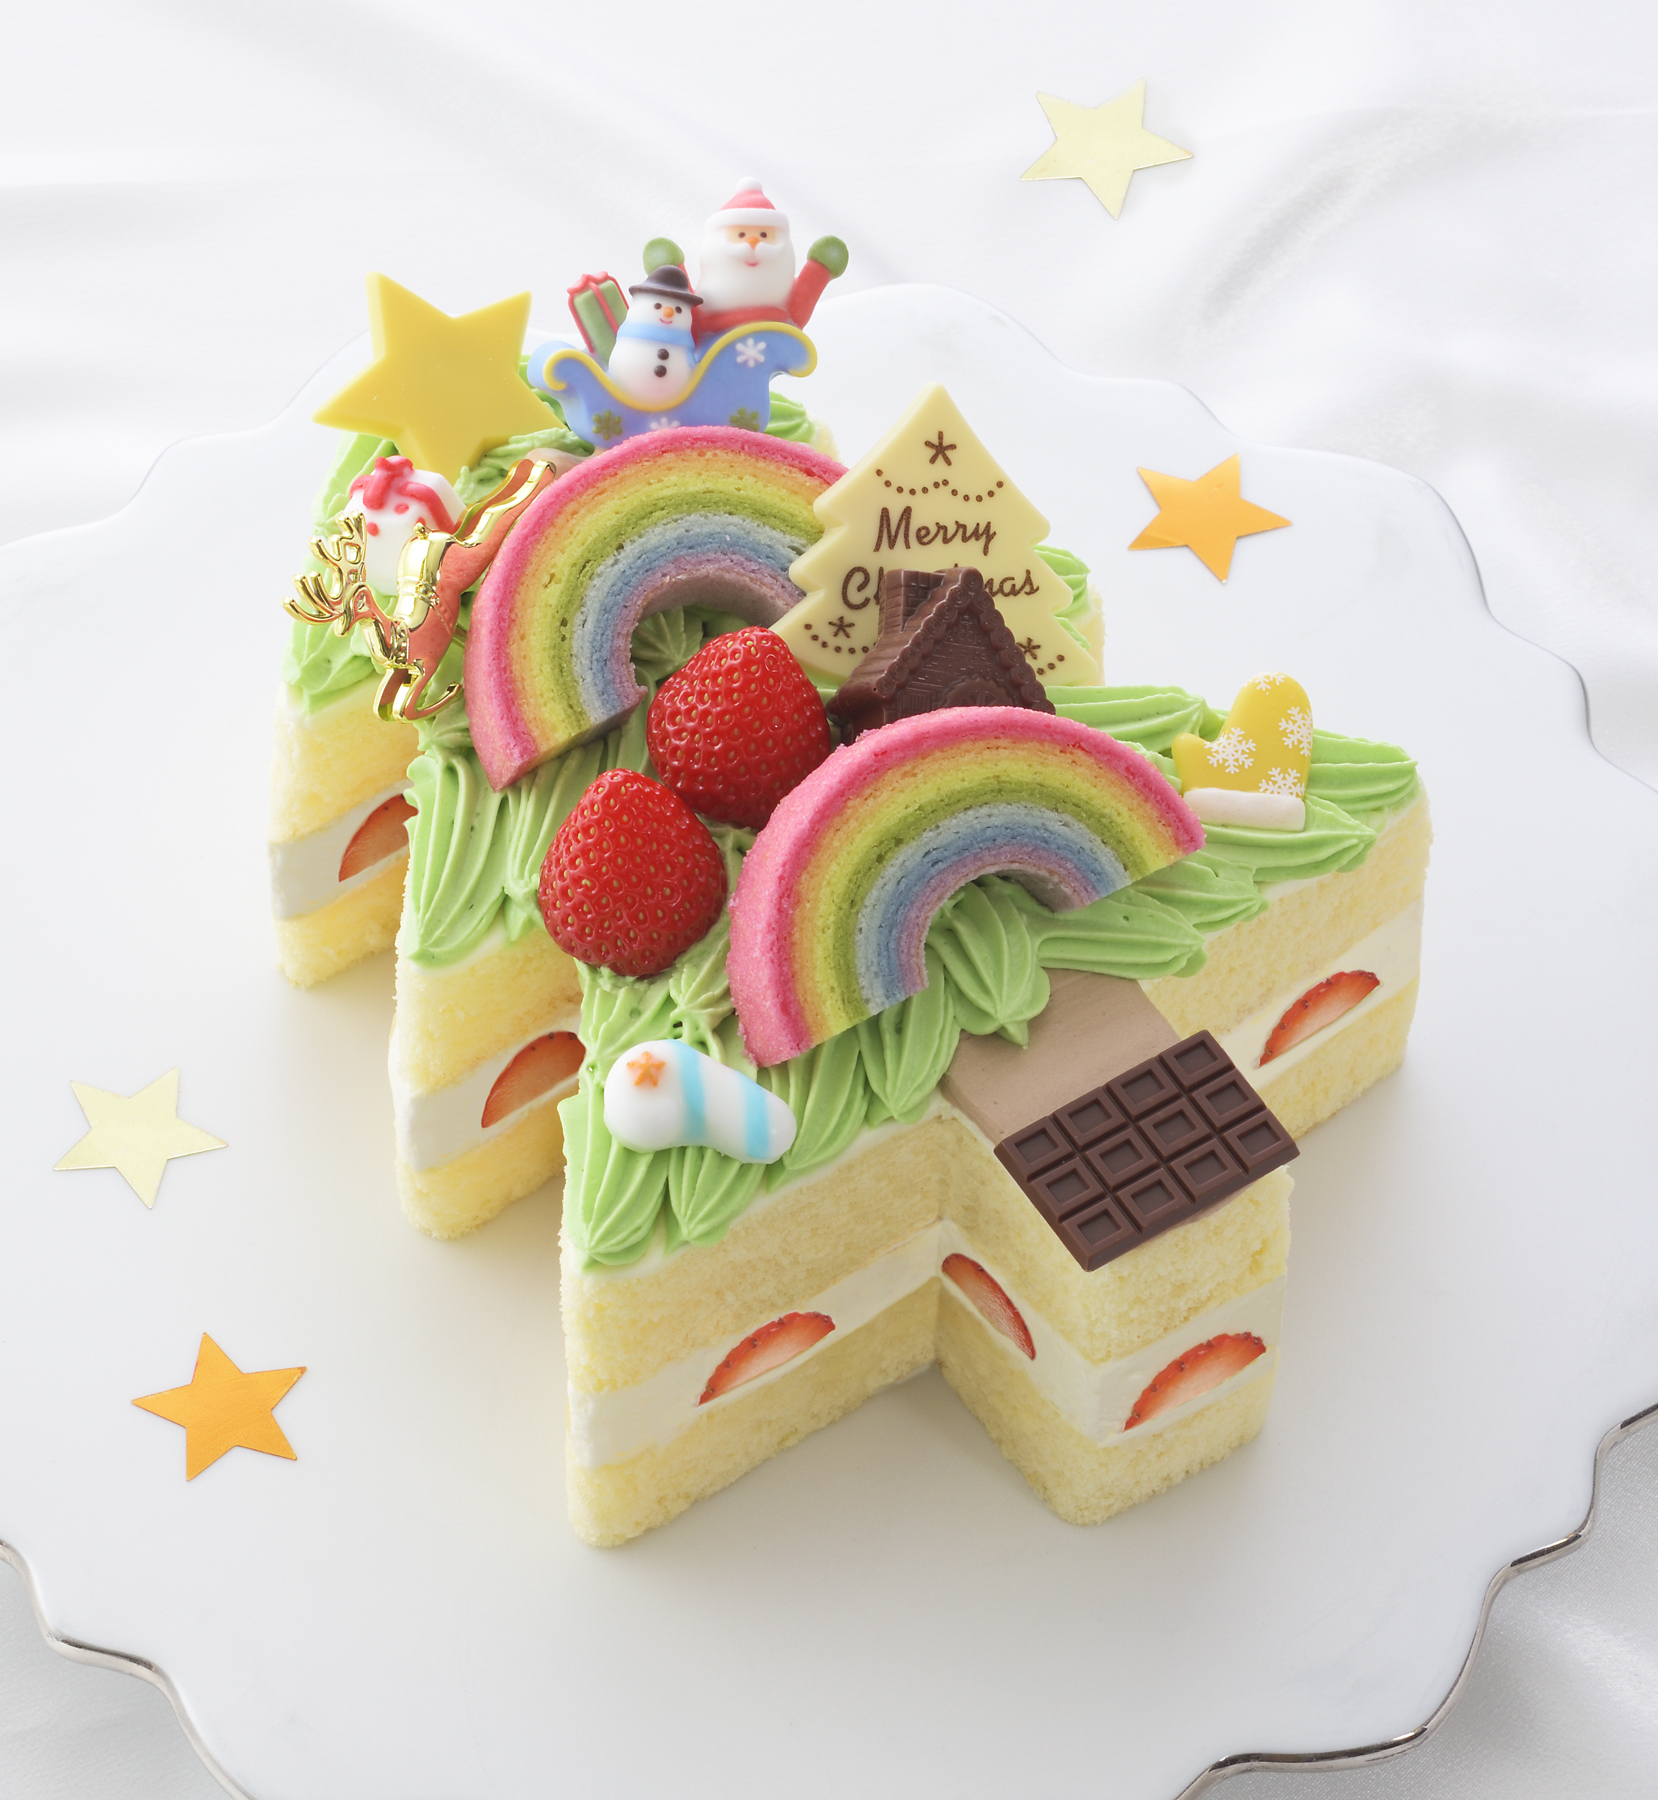 夢いっぱいのイラストが 本物のクリスマスケーキに 2016 Kid S Dream Cake 予約受付開始 株式会社銀座コージーコーナーのプレスリリース